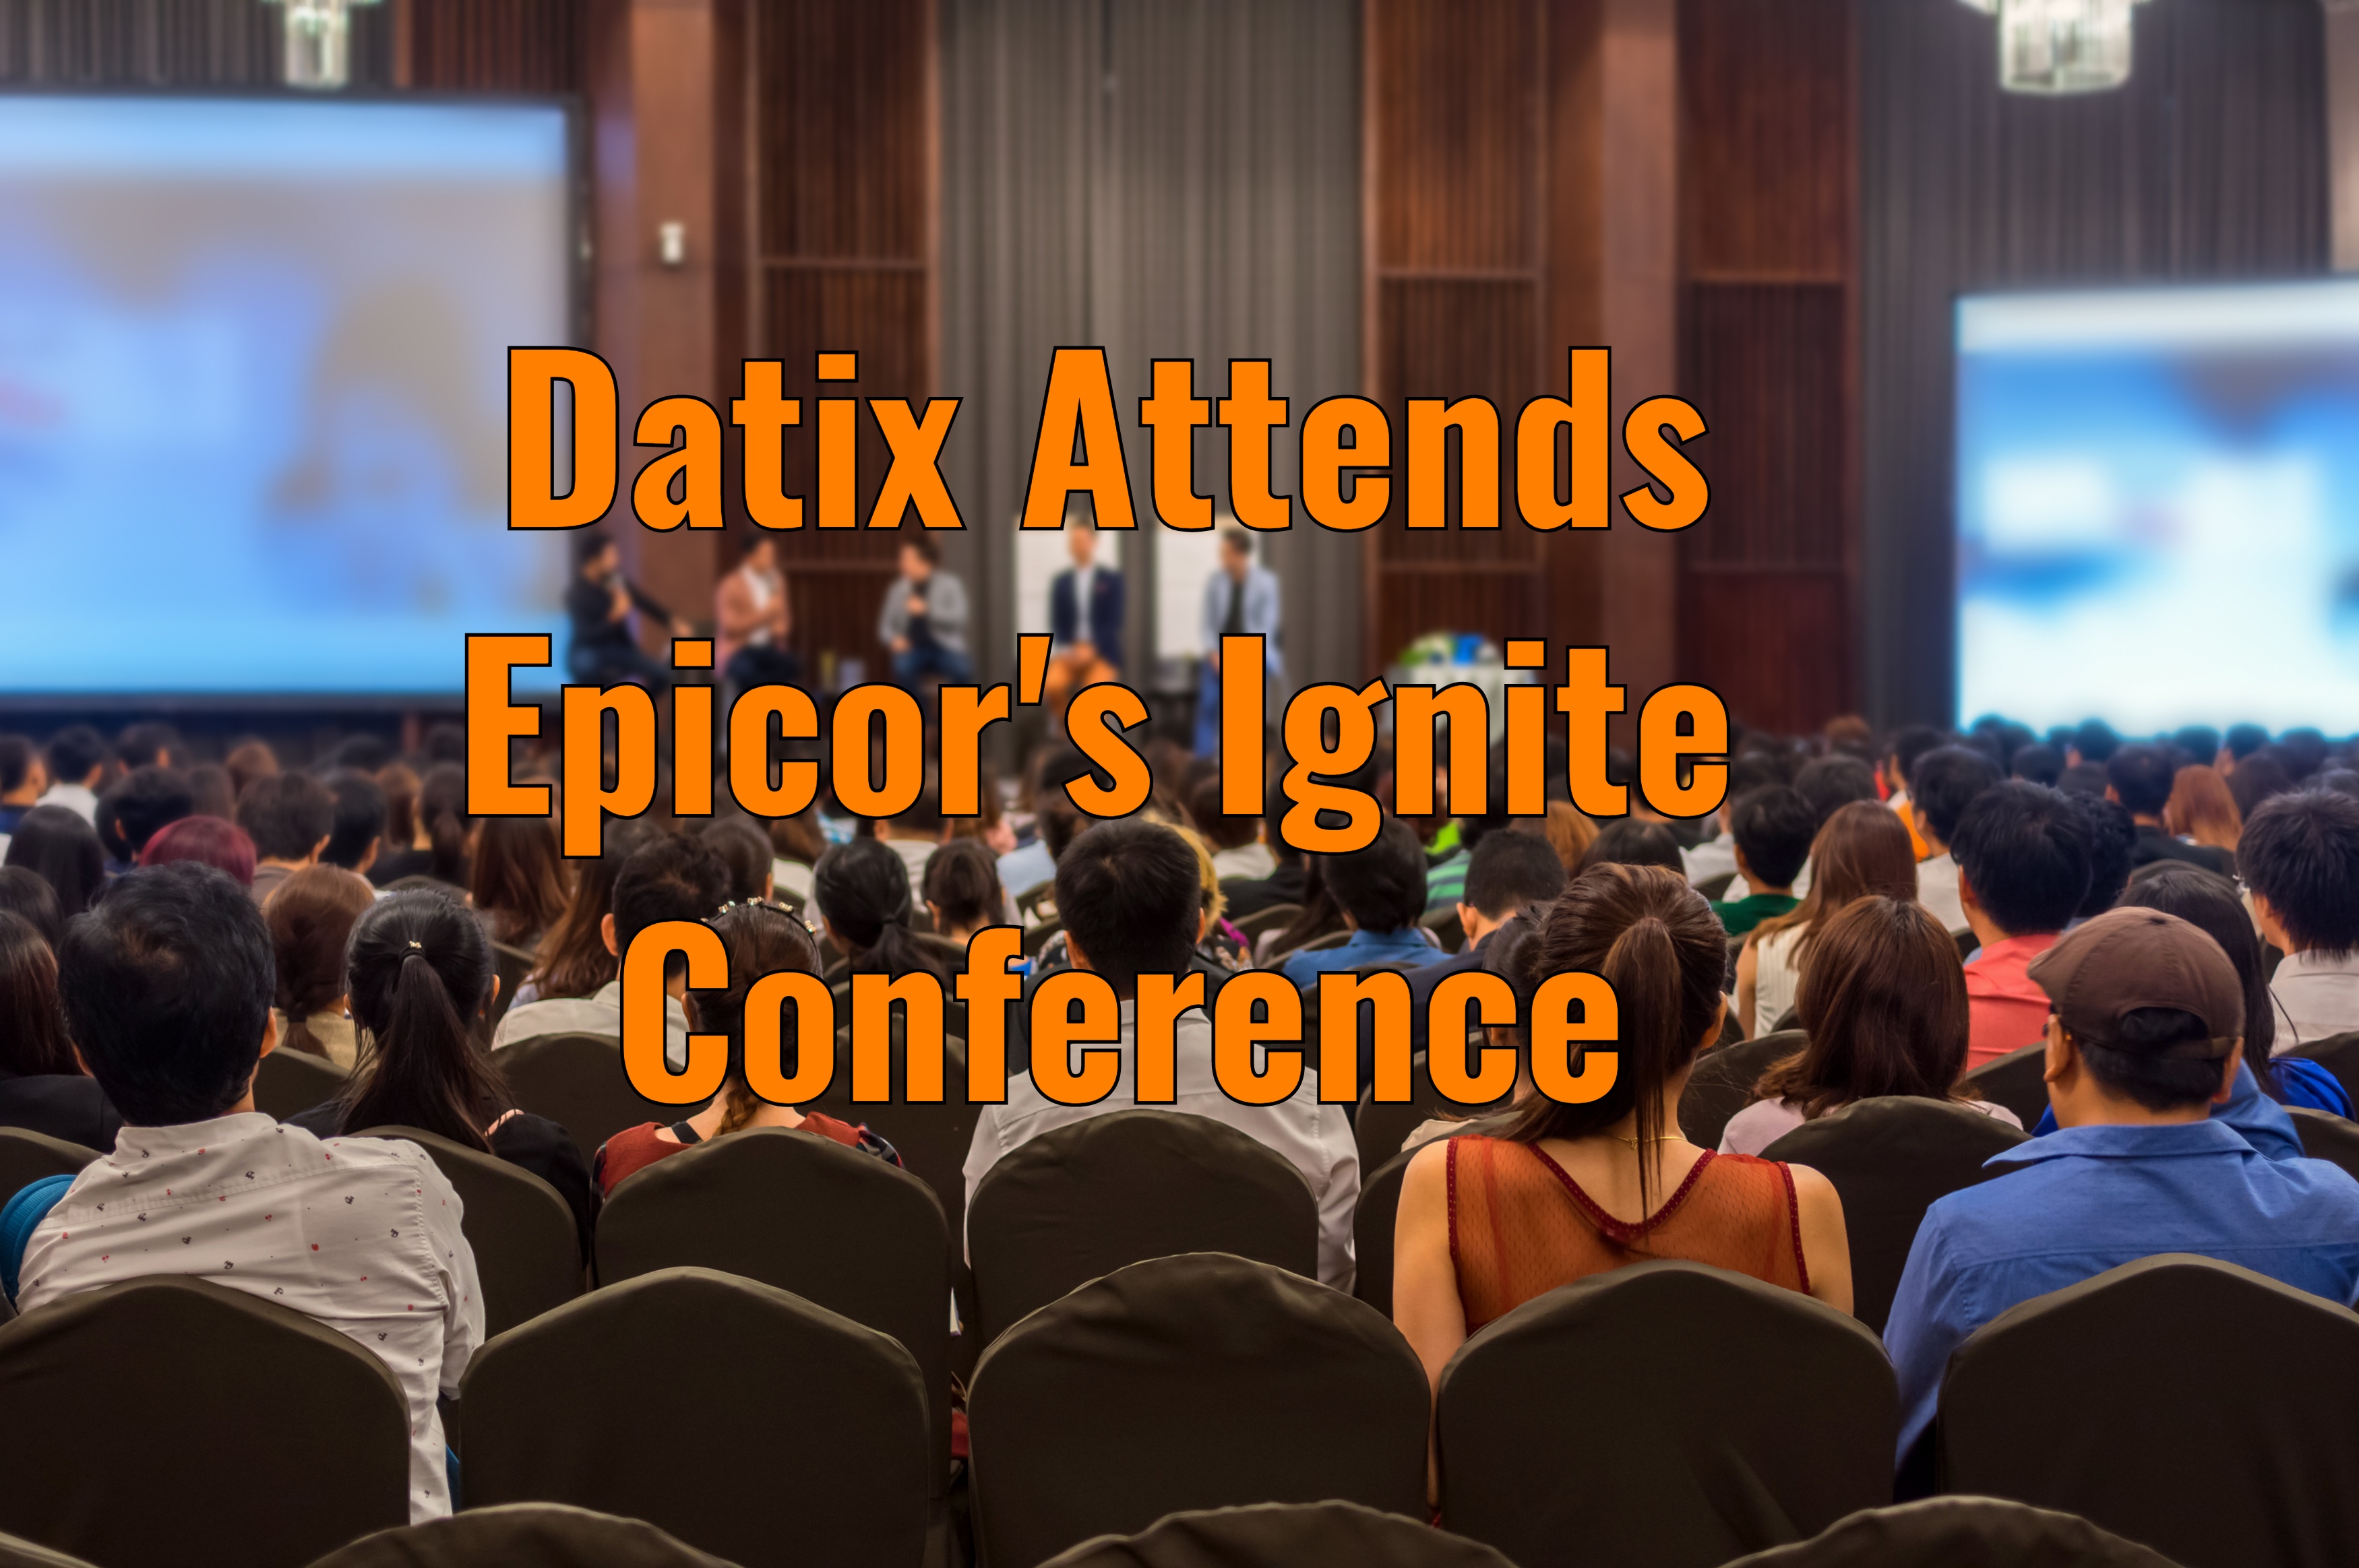 Datix Attends Epicor’s Ignite Conference